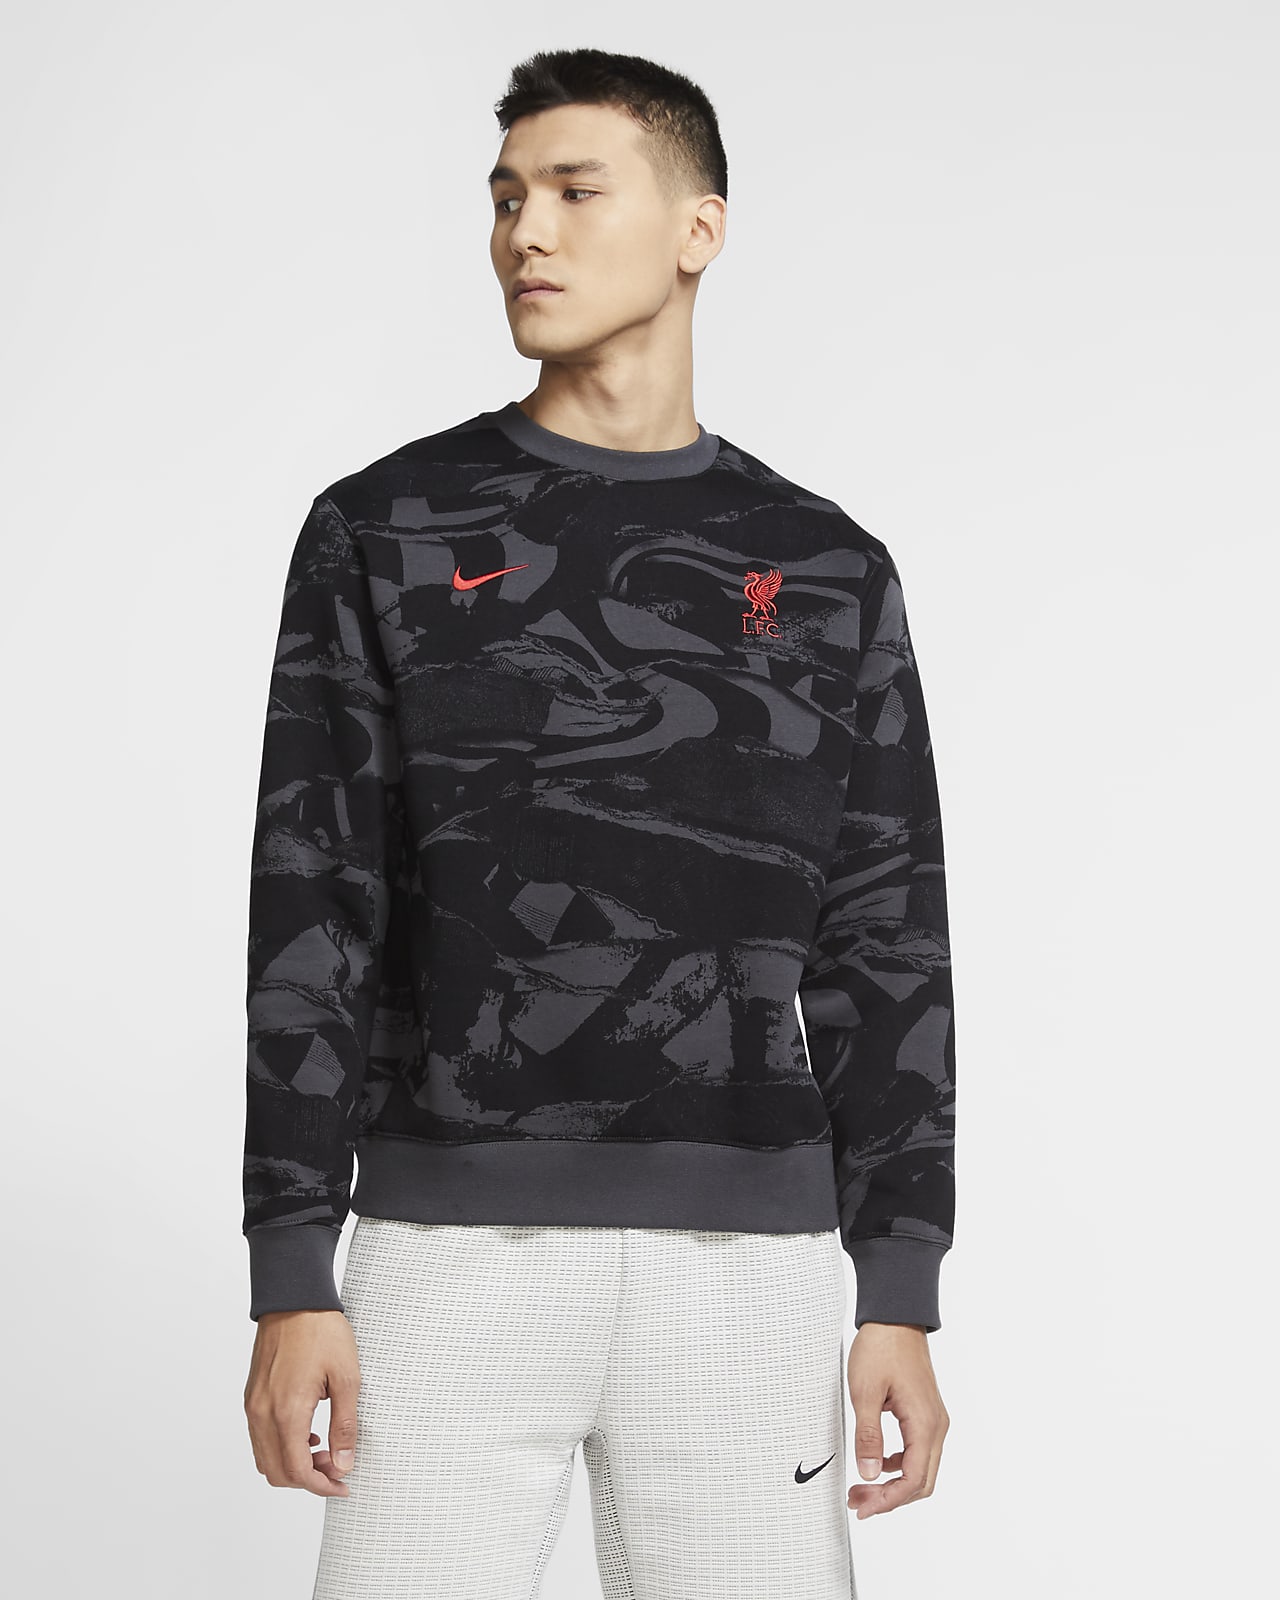 Sudadera de tejido Fleece para hombre Liverpool FC. Nike.com